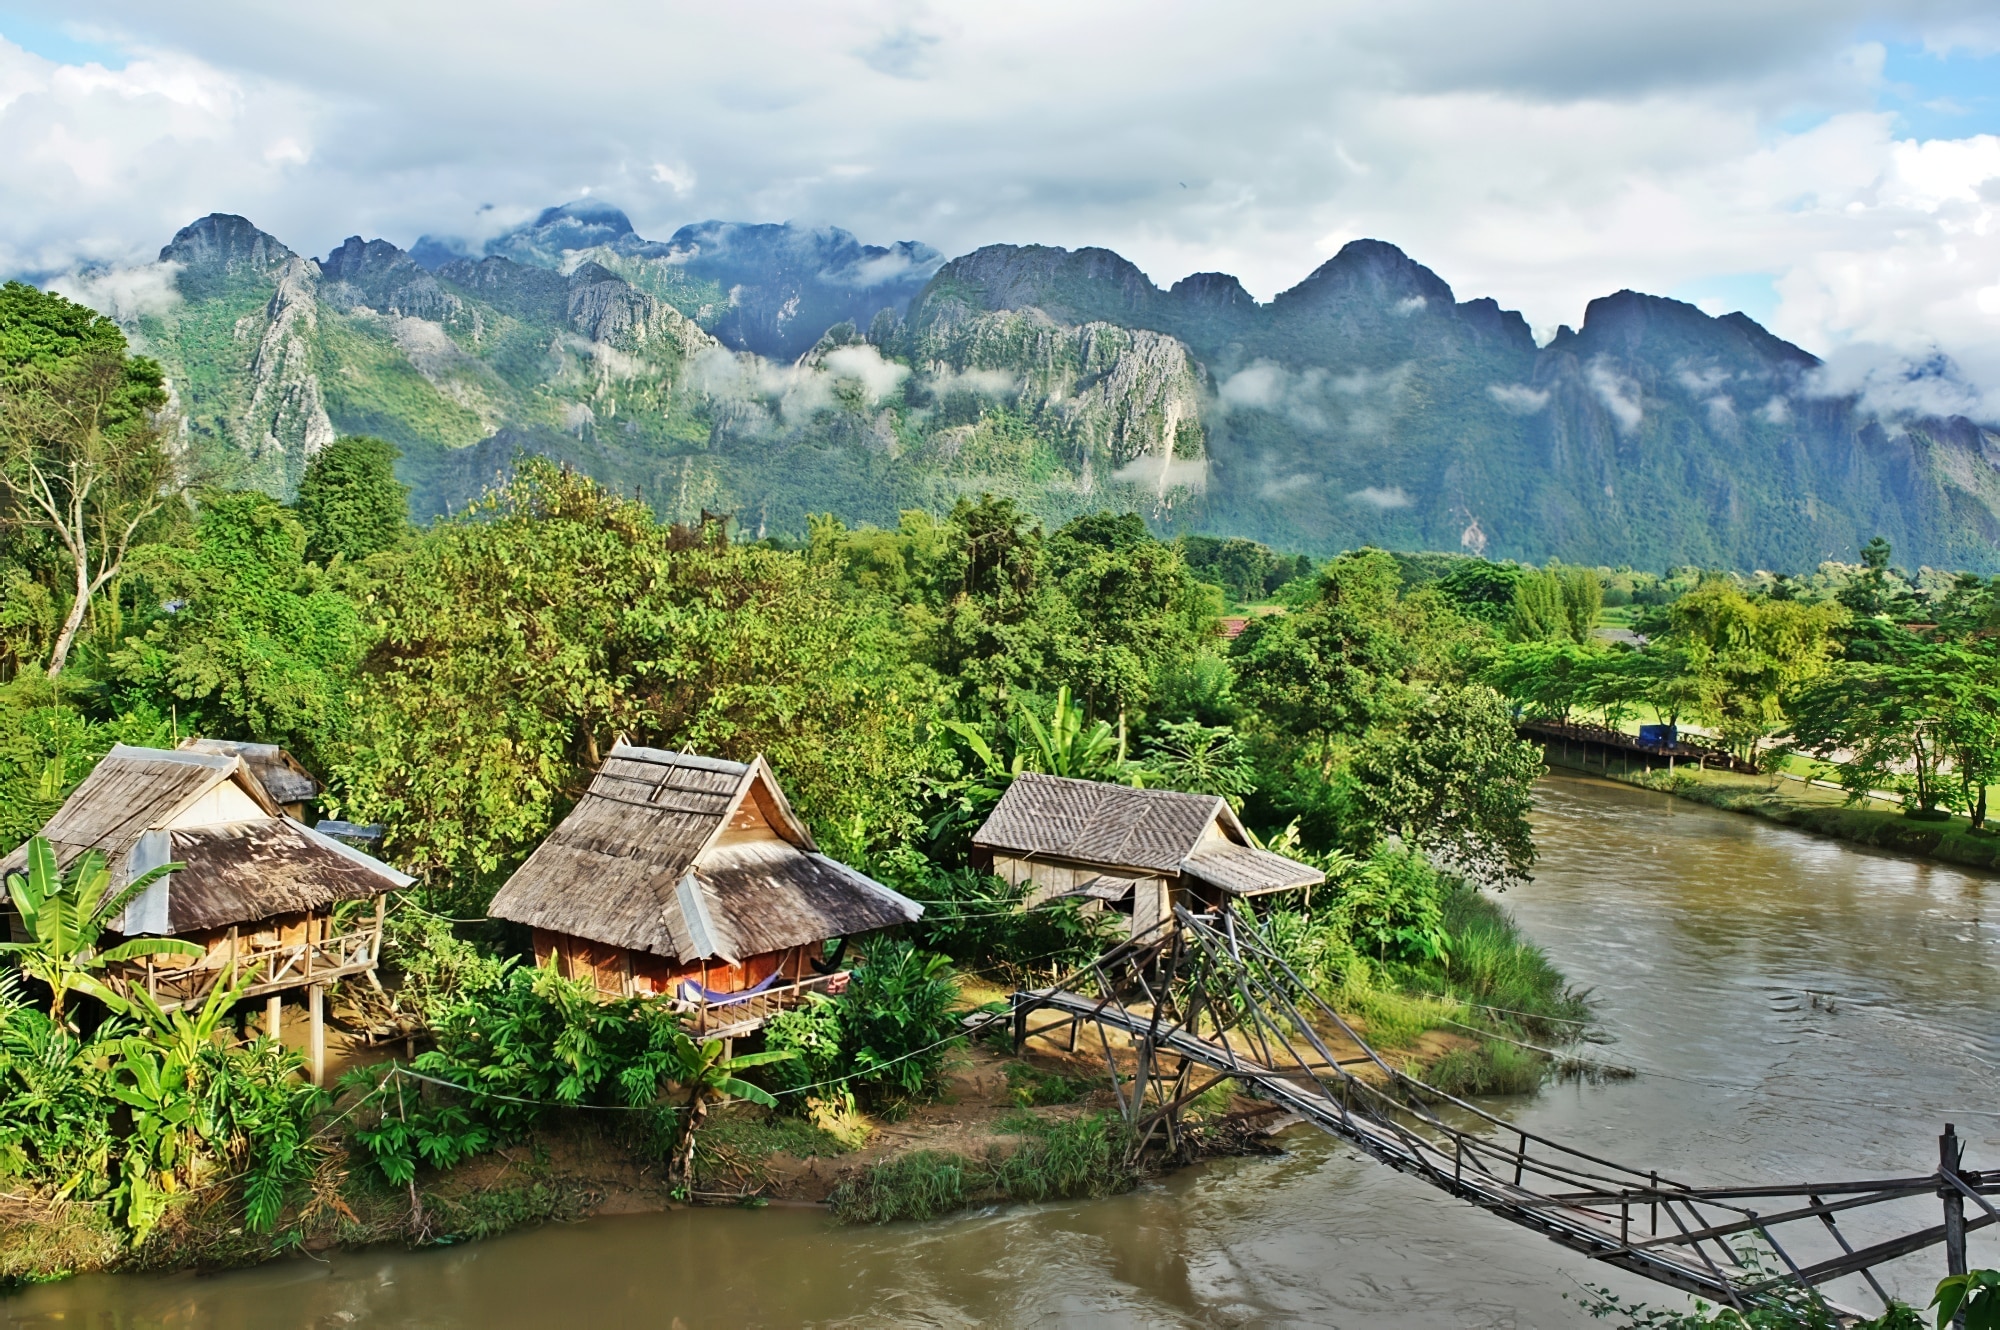 Petit village de Vang Vieng